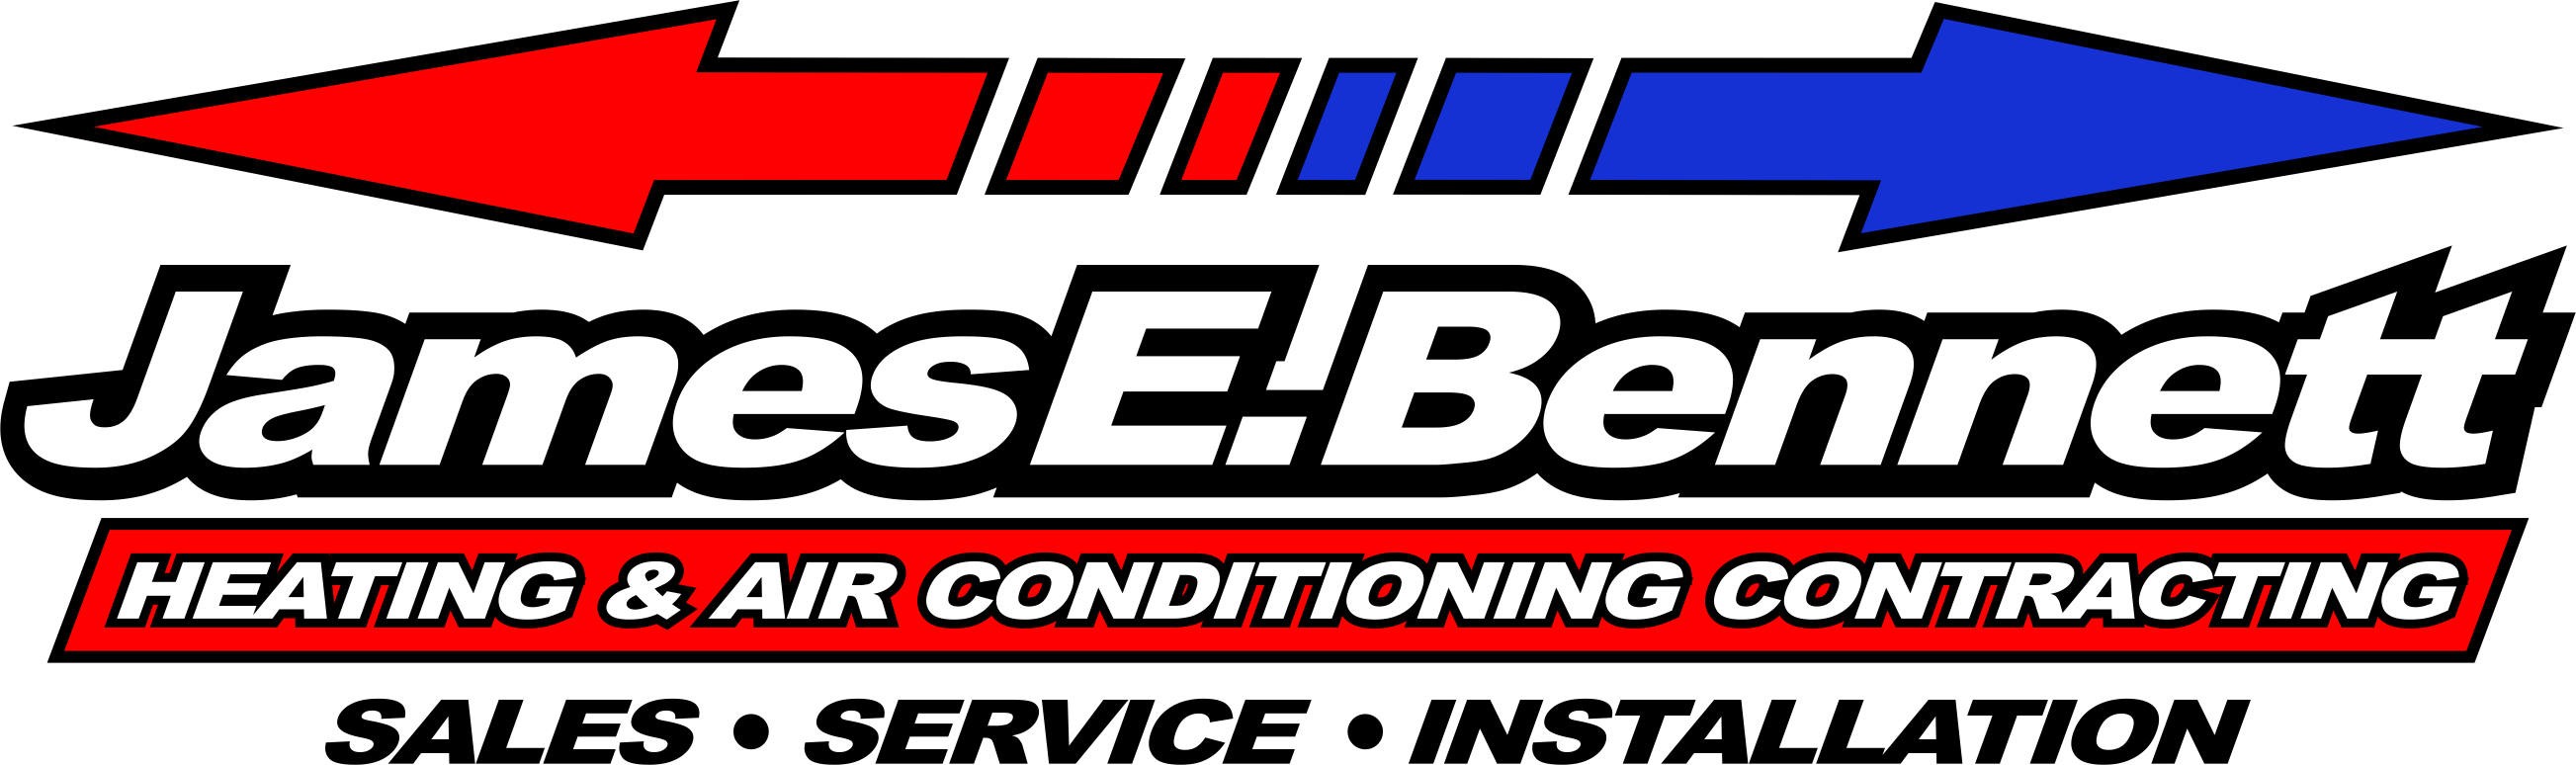 James E Bennett Heating & Air Contracting, LLC Logo